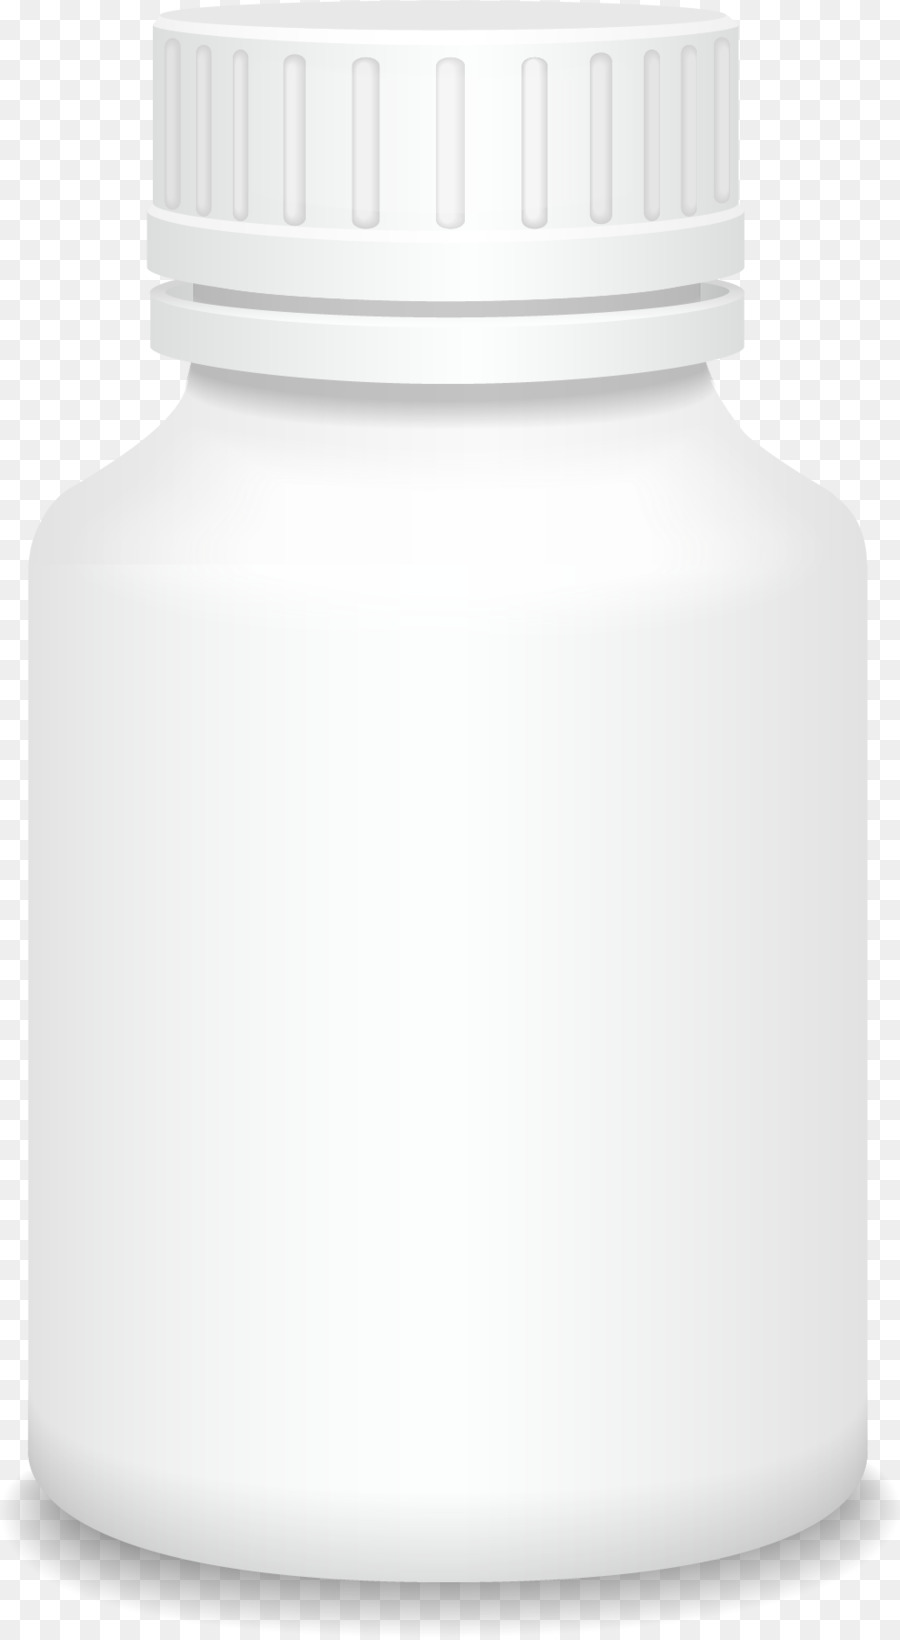 Plastic bottle - White vector medicine bottle png download - 1001*1822 - Free Transparent Bottle png Download.